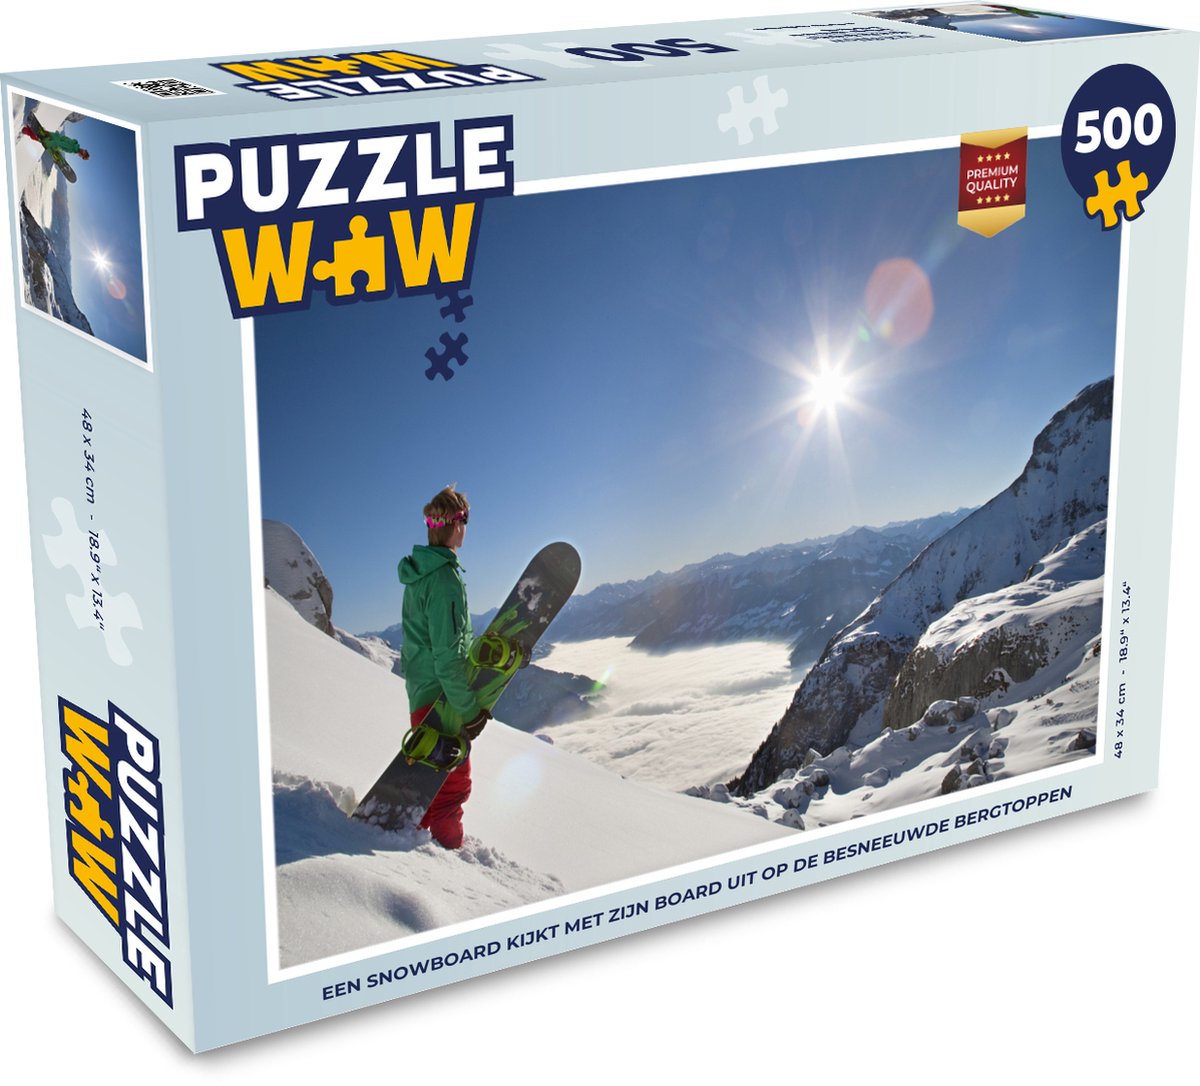 Afbeelding van product Puzzel 500 stukjes Snowboarden - Een snowboard kijkt met zijn board uit op de besneeuwde bergtoppen - PuzzleWow heeft +100000 puzzels